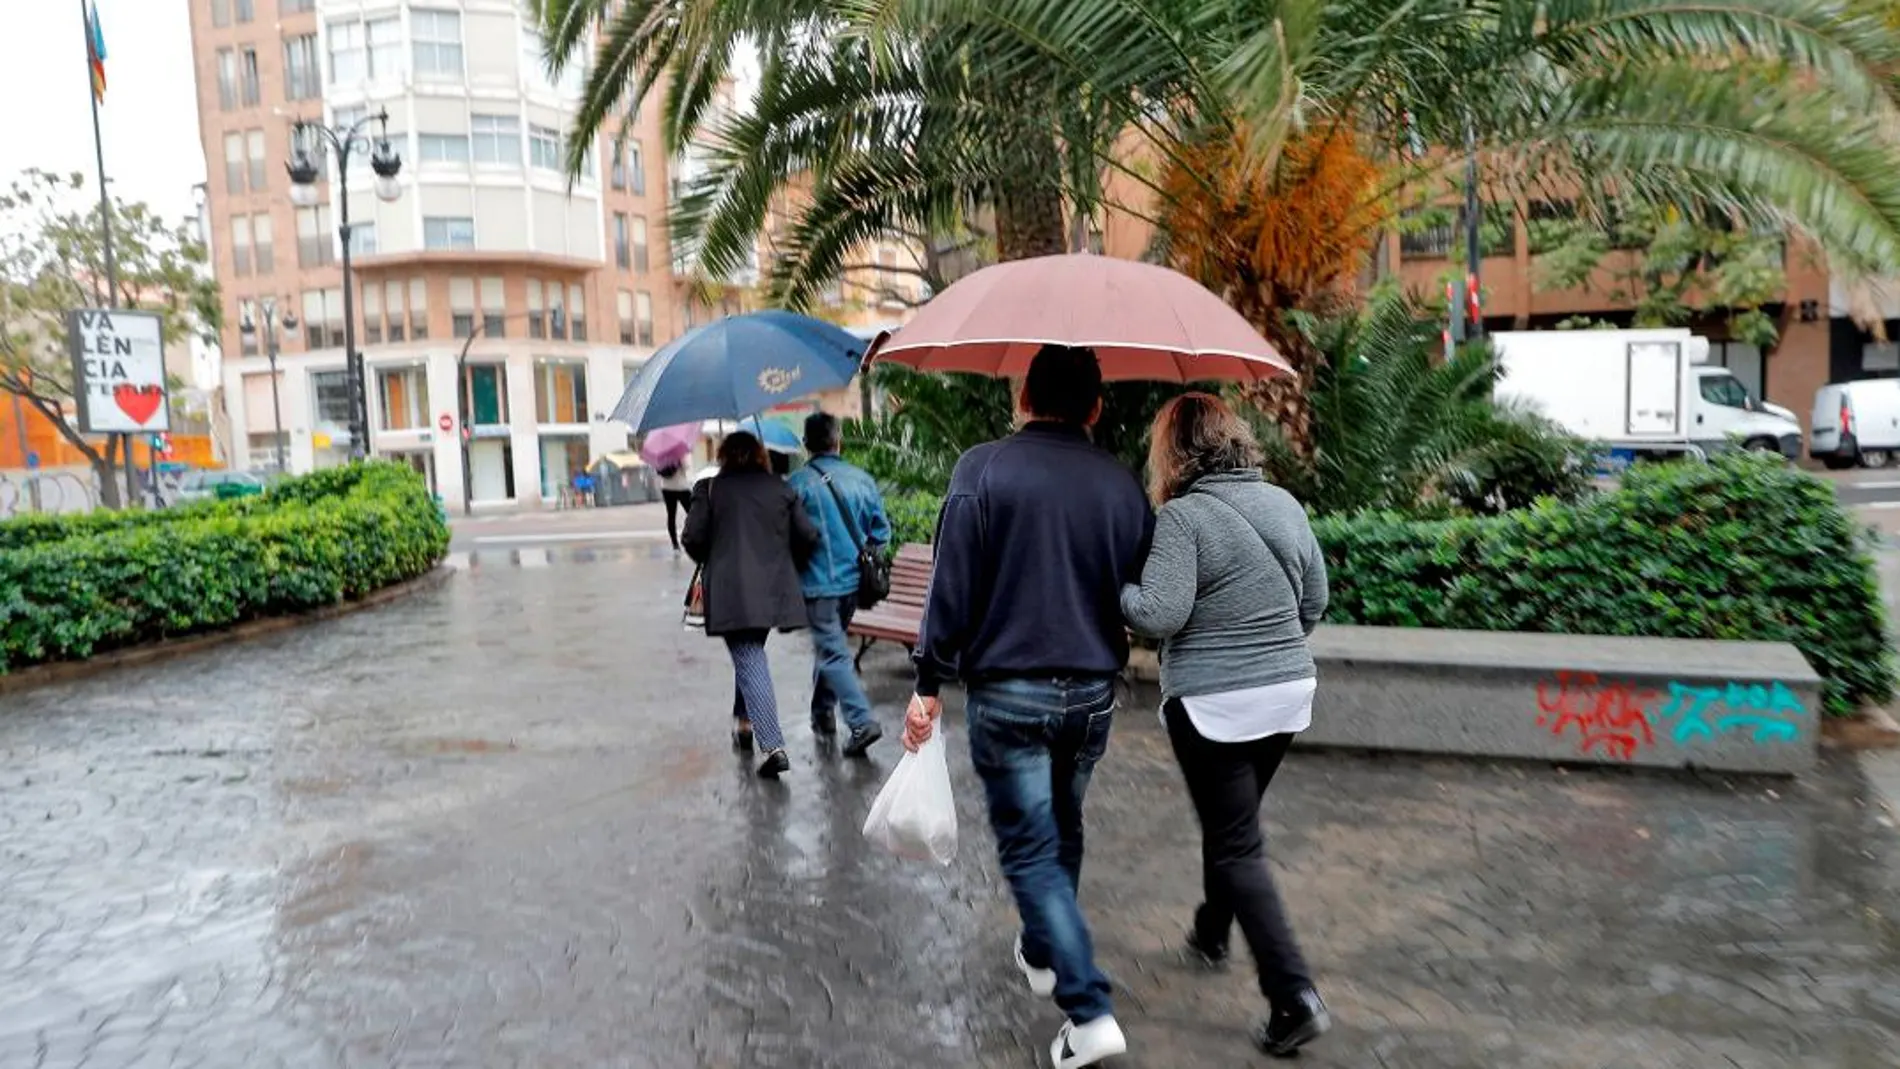 La Agencia Estatal de Meteorología prevé para mañana tiempo estable en la mayor parte del país, con posibilidad de lloviznas en Pirineos, litoral noreste peninsular, Baleares, litoral de Alborán y Melilla.